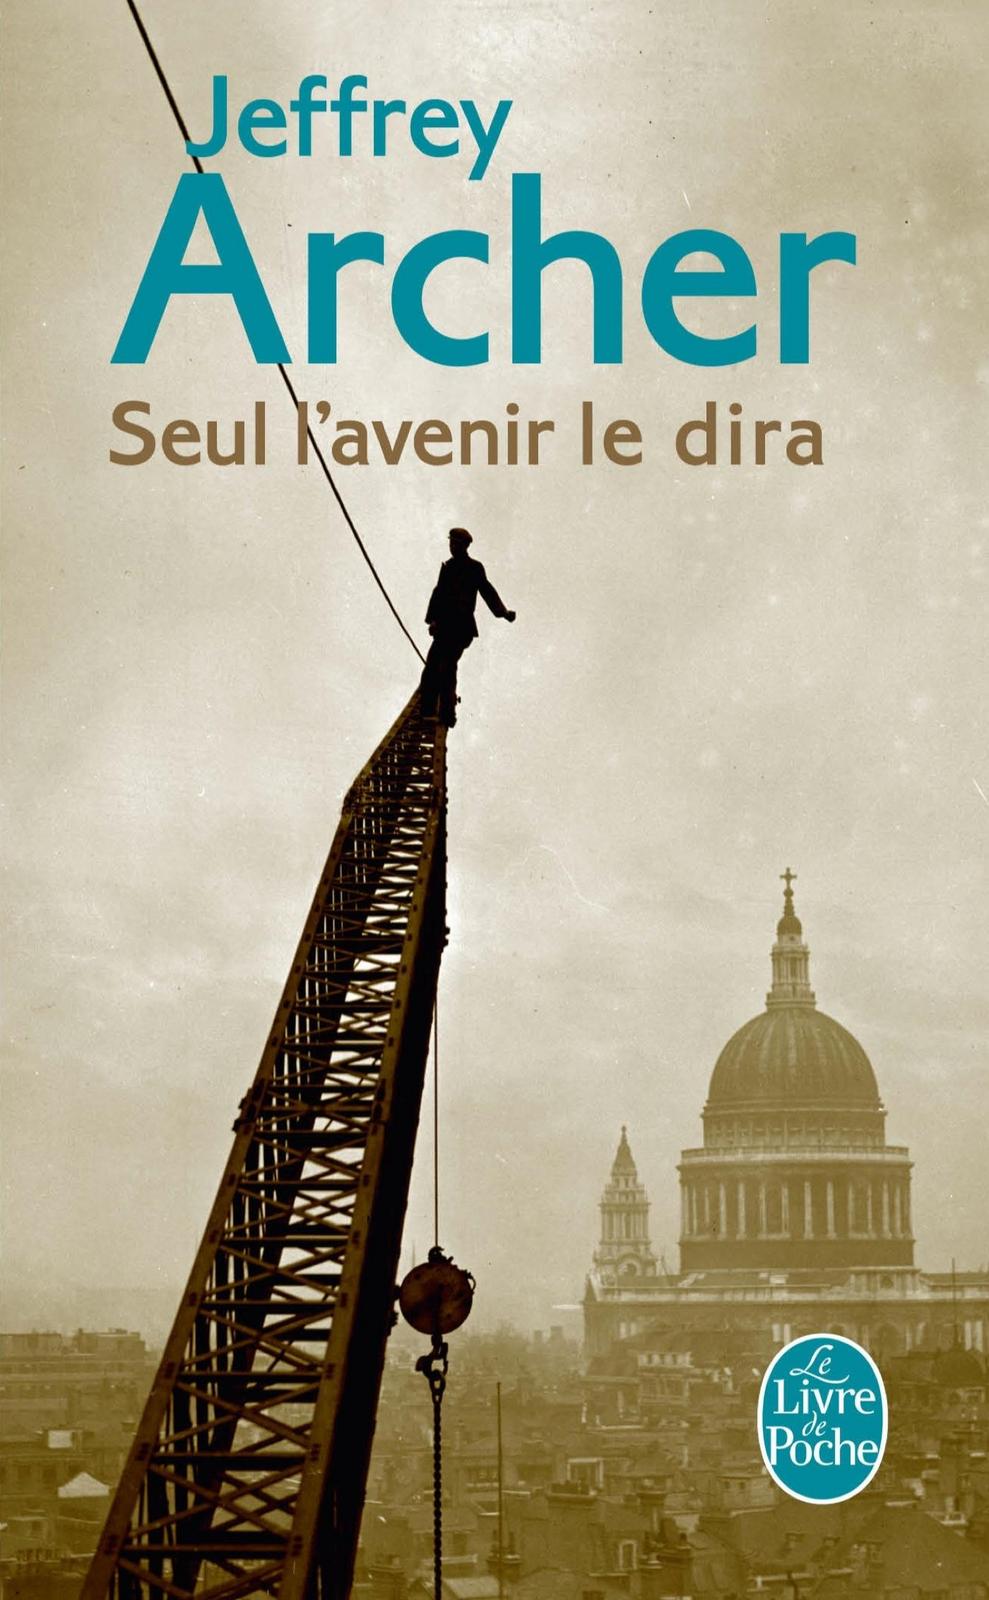 Jeffrey Archer: Seul l'avenir le dira (French language, 2013)